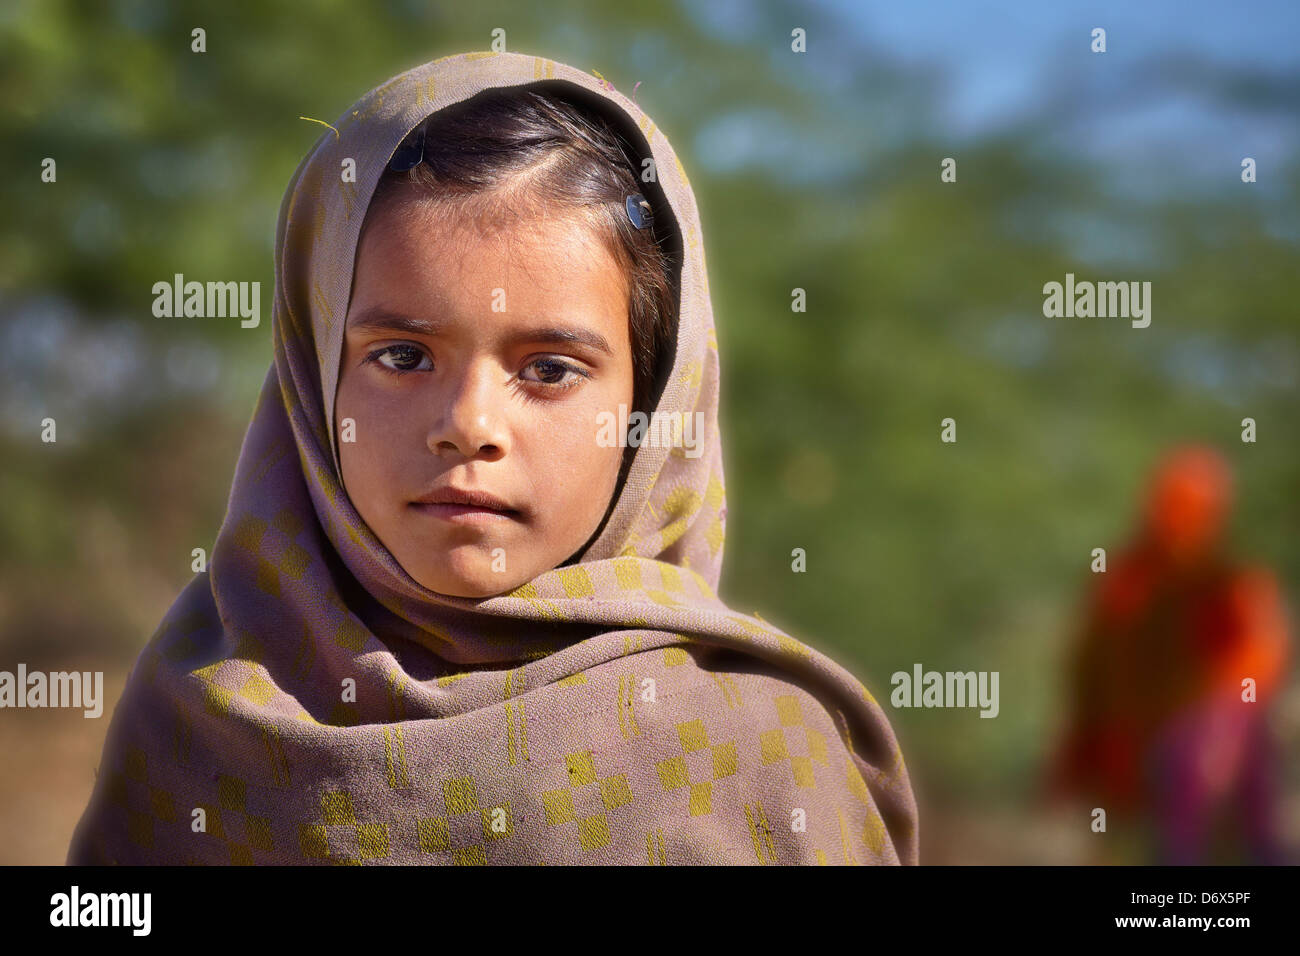 Indische Kinder - Prtrait schlecht gekleidet Indien junge Mädchen, Bundesstaat Rajasthan, Indien Stockfoto